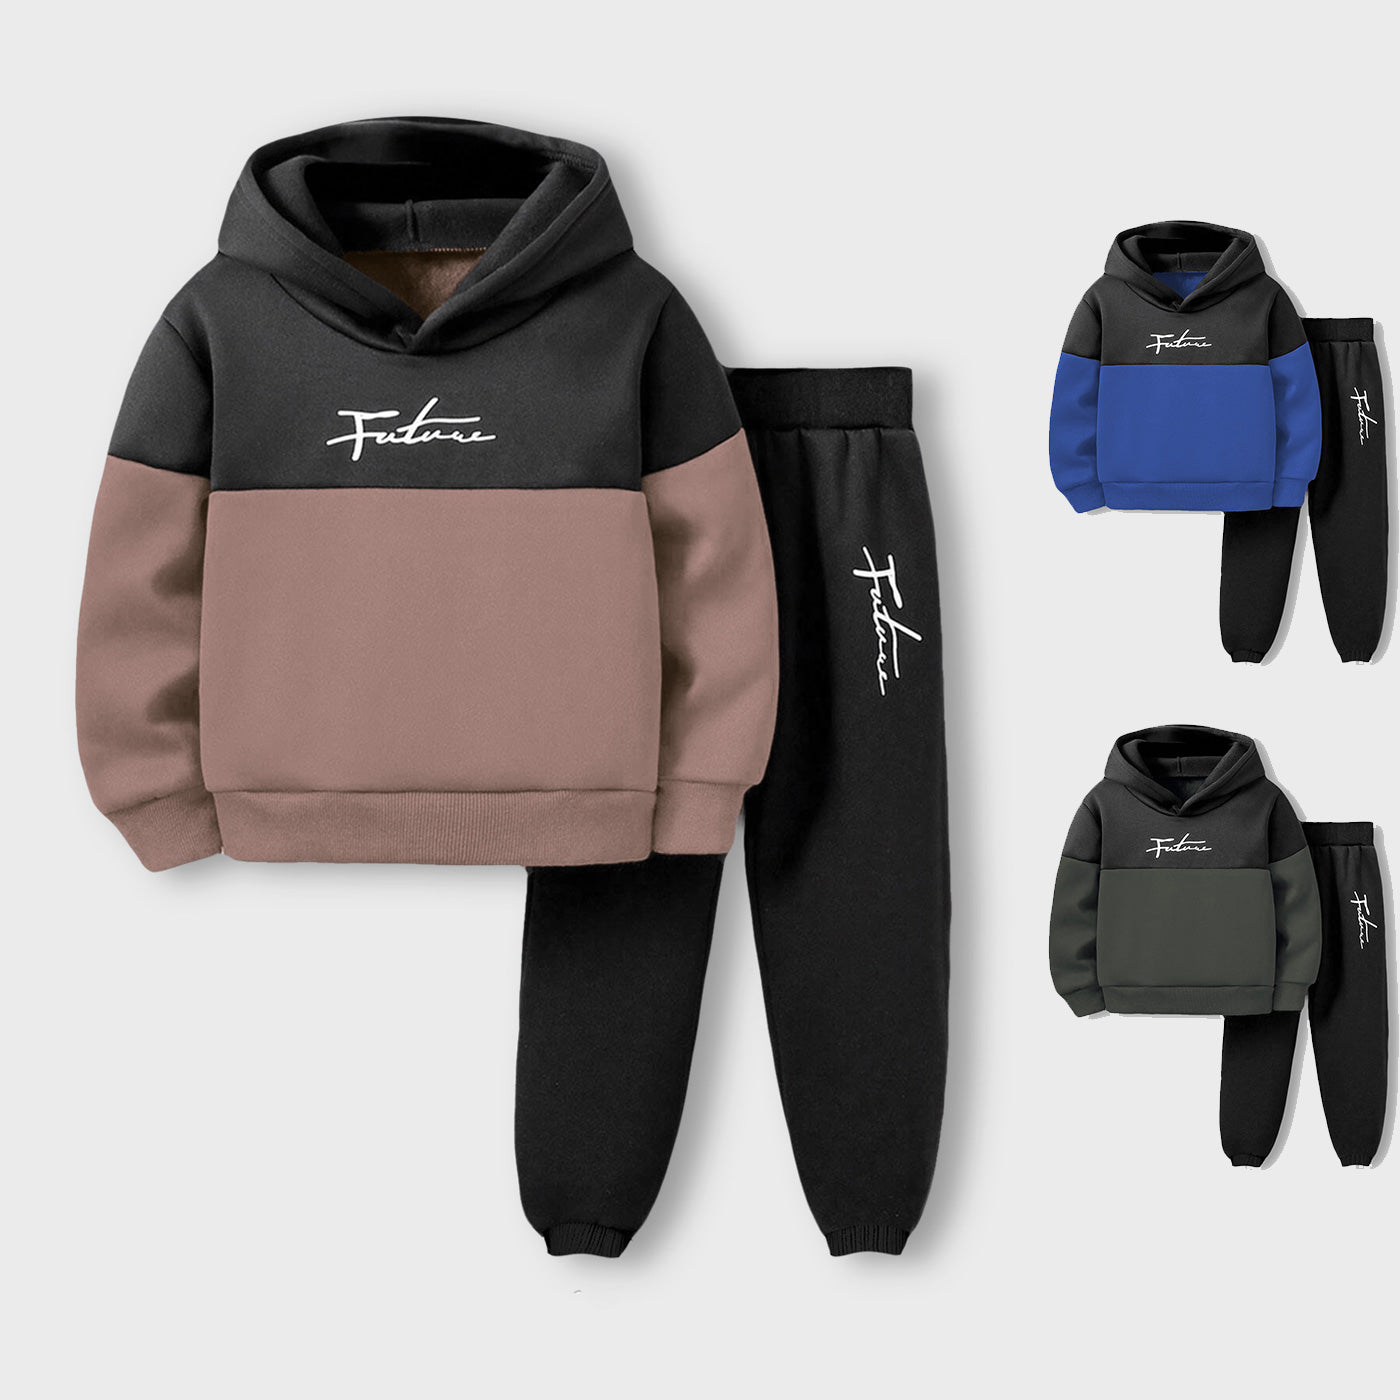 2pcs Boy's Color Clash Outfit, Hoodie & Sweatpants Set (Winter Stuff)